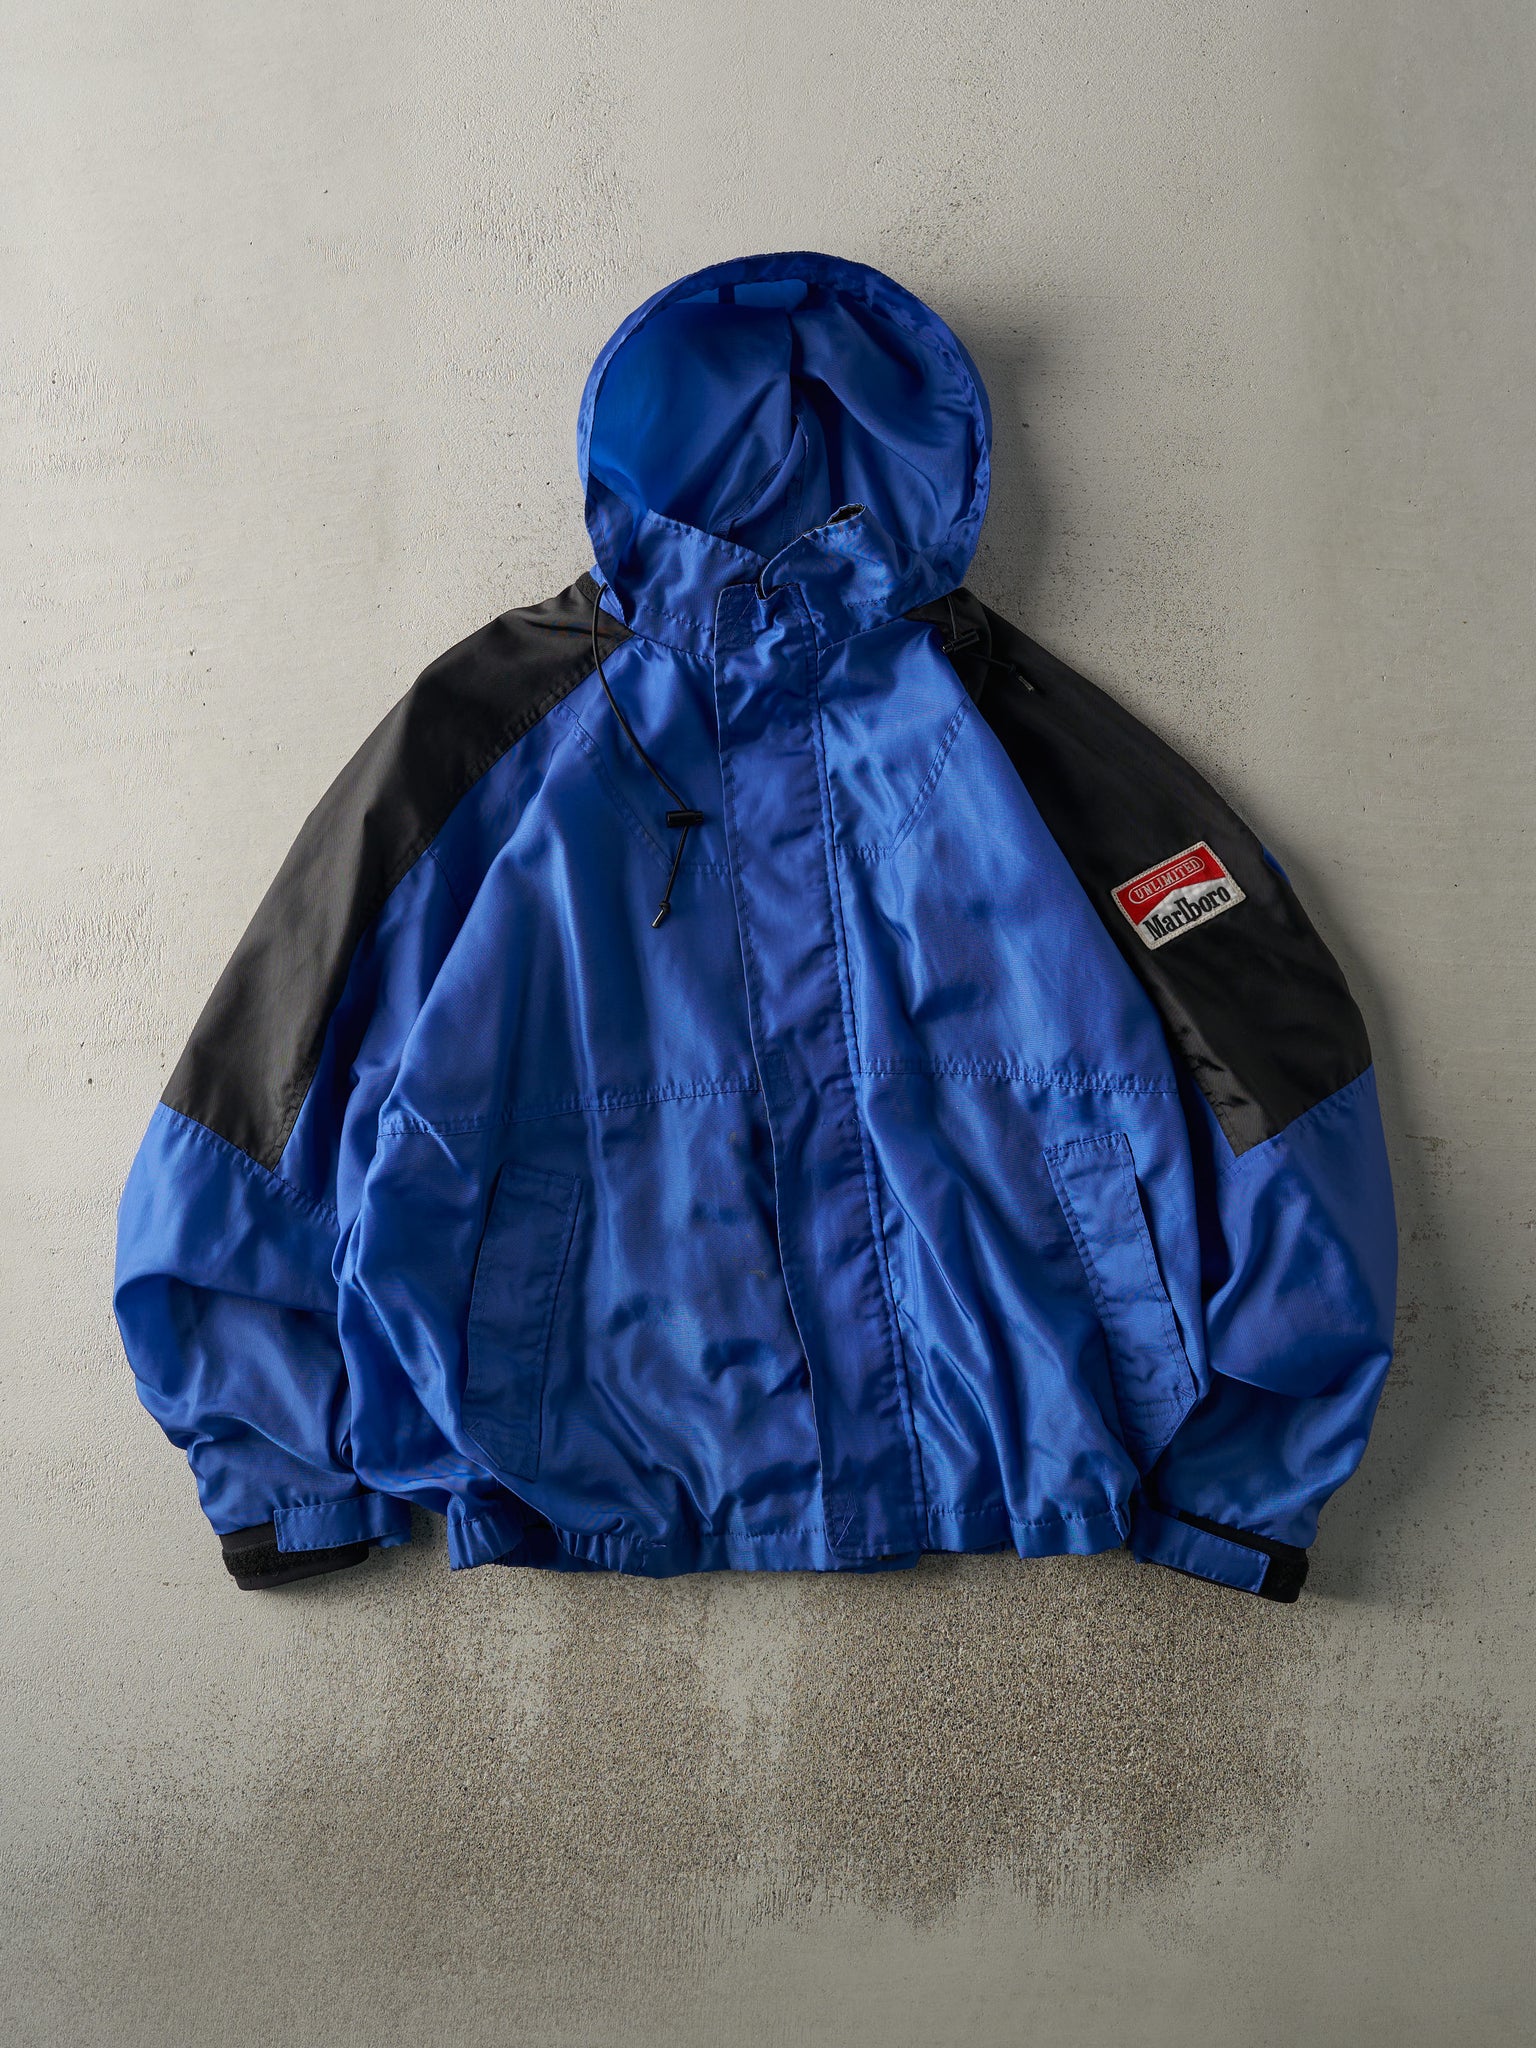 Vintage 90s Blue & Black Marlboro Windbreaker Jacket (L)